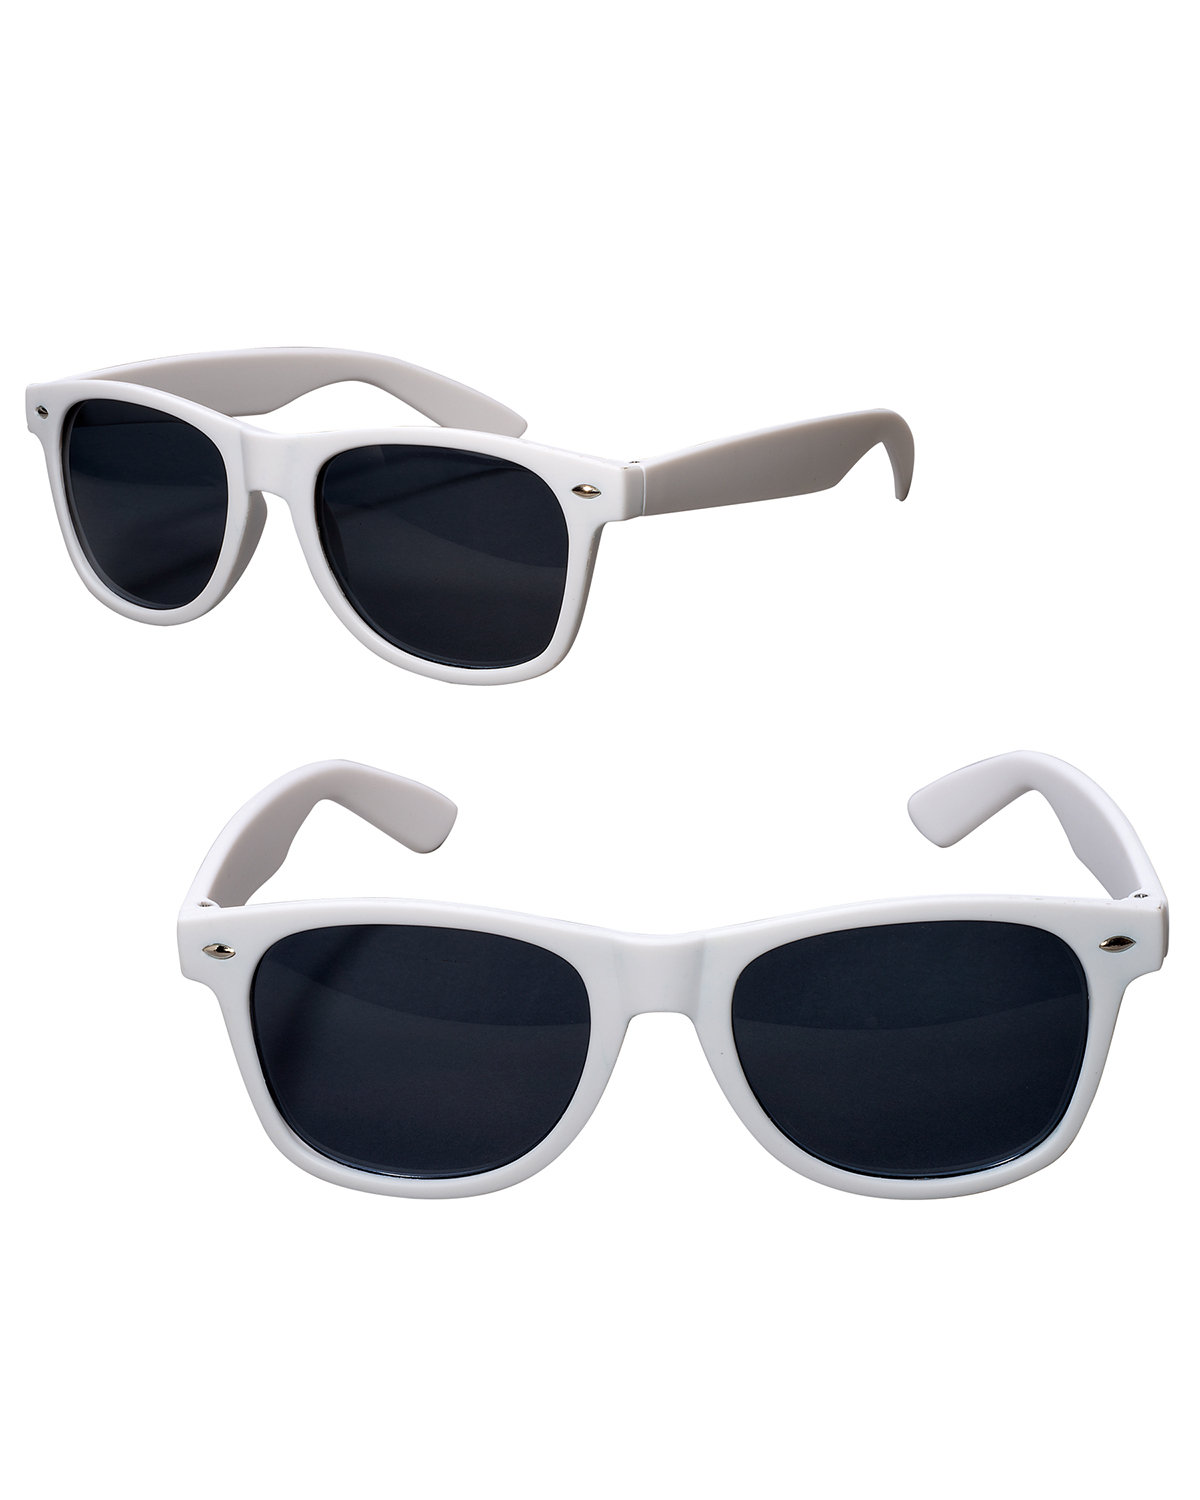 Prime Line Rubberized Finish Fashion Sunglasses white 